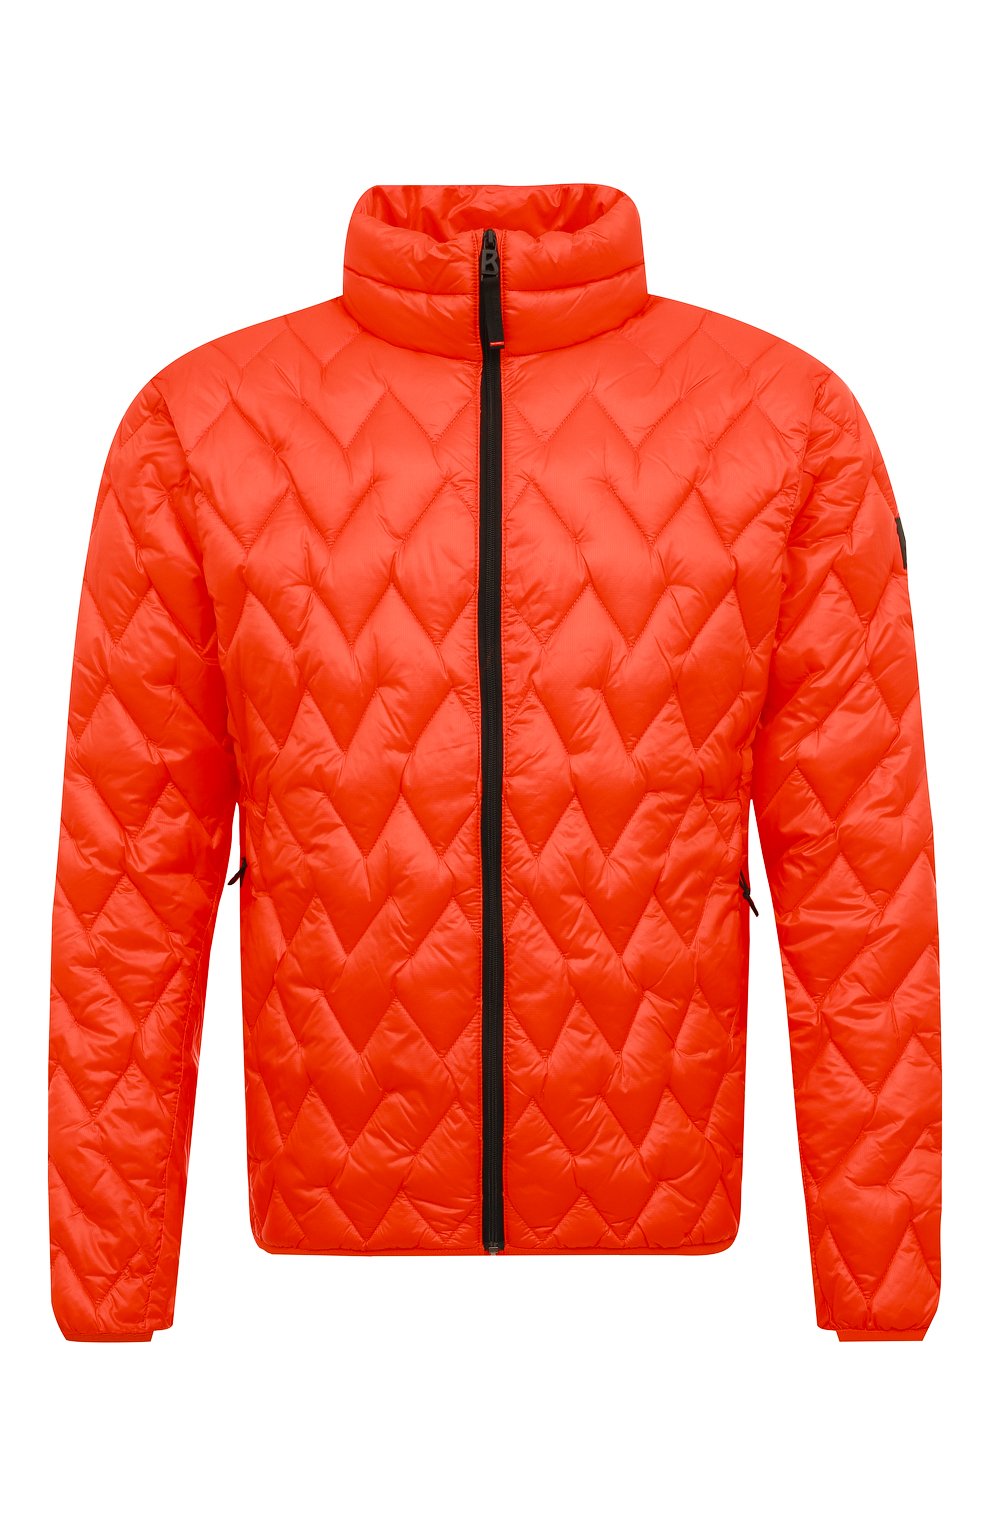 Мужская утепленная куртка BOGNER FIRE+ICE оранжевого цвета, арт. 34097215 | Фото 1 (Кросс-КТ: Куртка; Рукава: Длинные; Материал внешний: Синтетический материал; Мужское Кросс-КТ: утепленные куртки; Длина (верхняя одежда): Короткие; Стили: Кэжуэл)